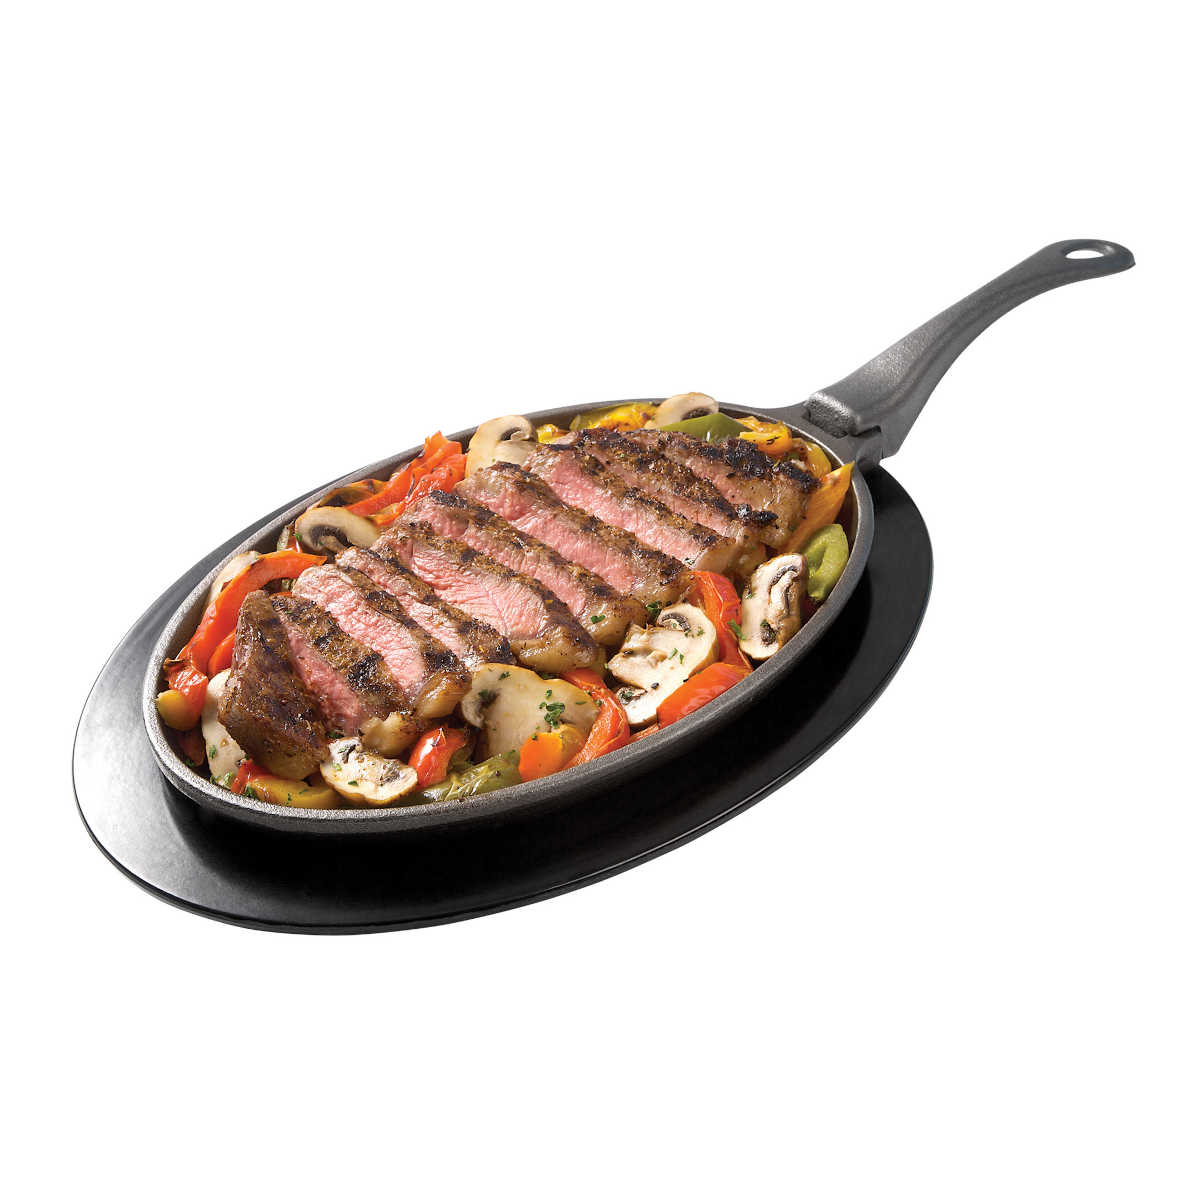 Nopelon Gusspfanne mit Untersetzer - Steak